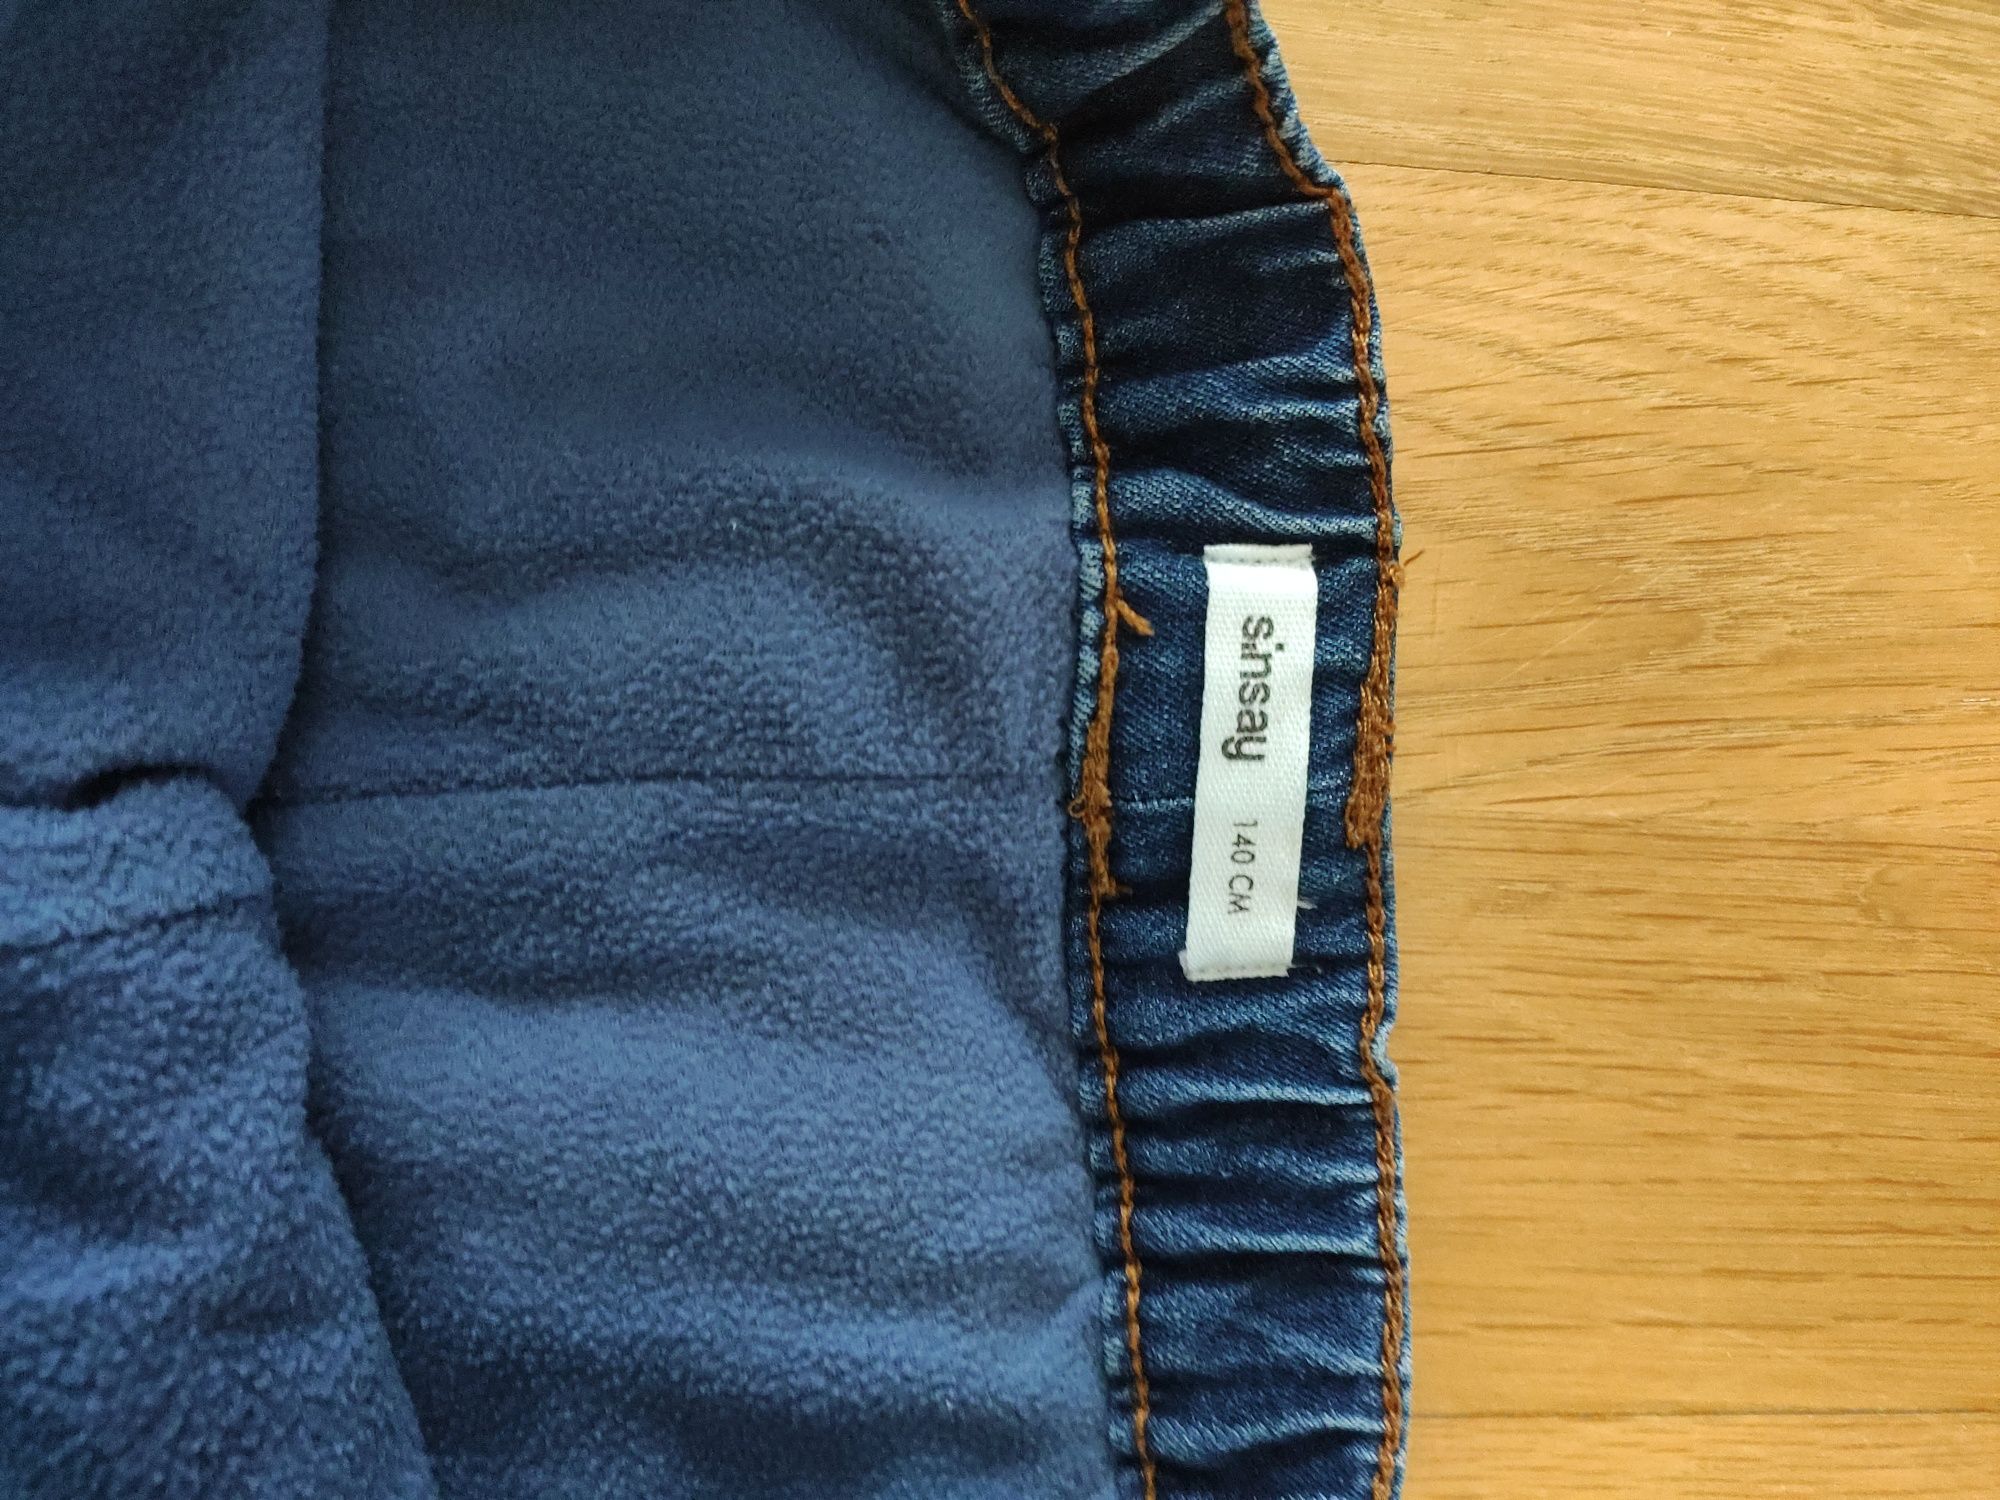 Spodnie jeansowe ocieplane r. 140